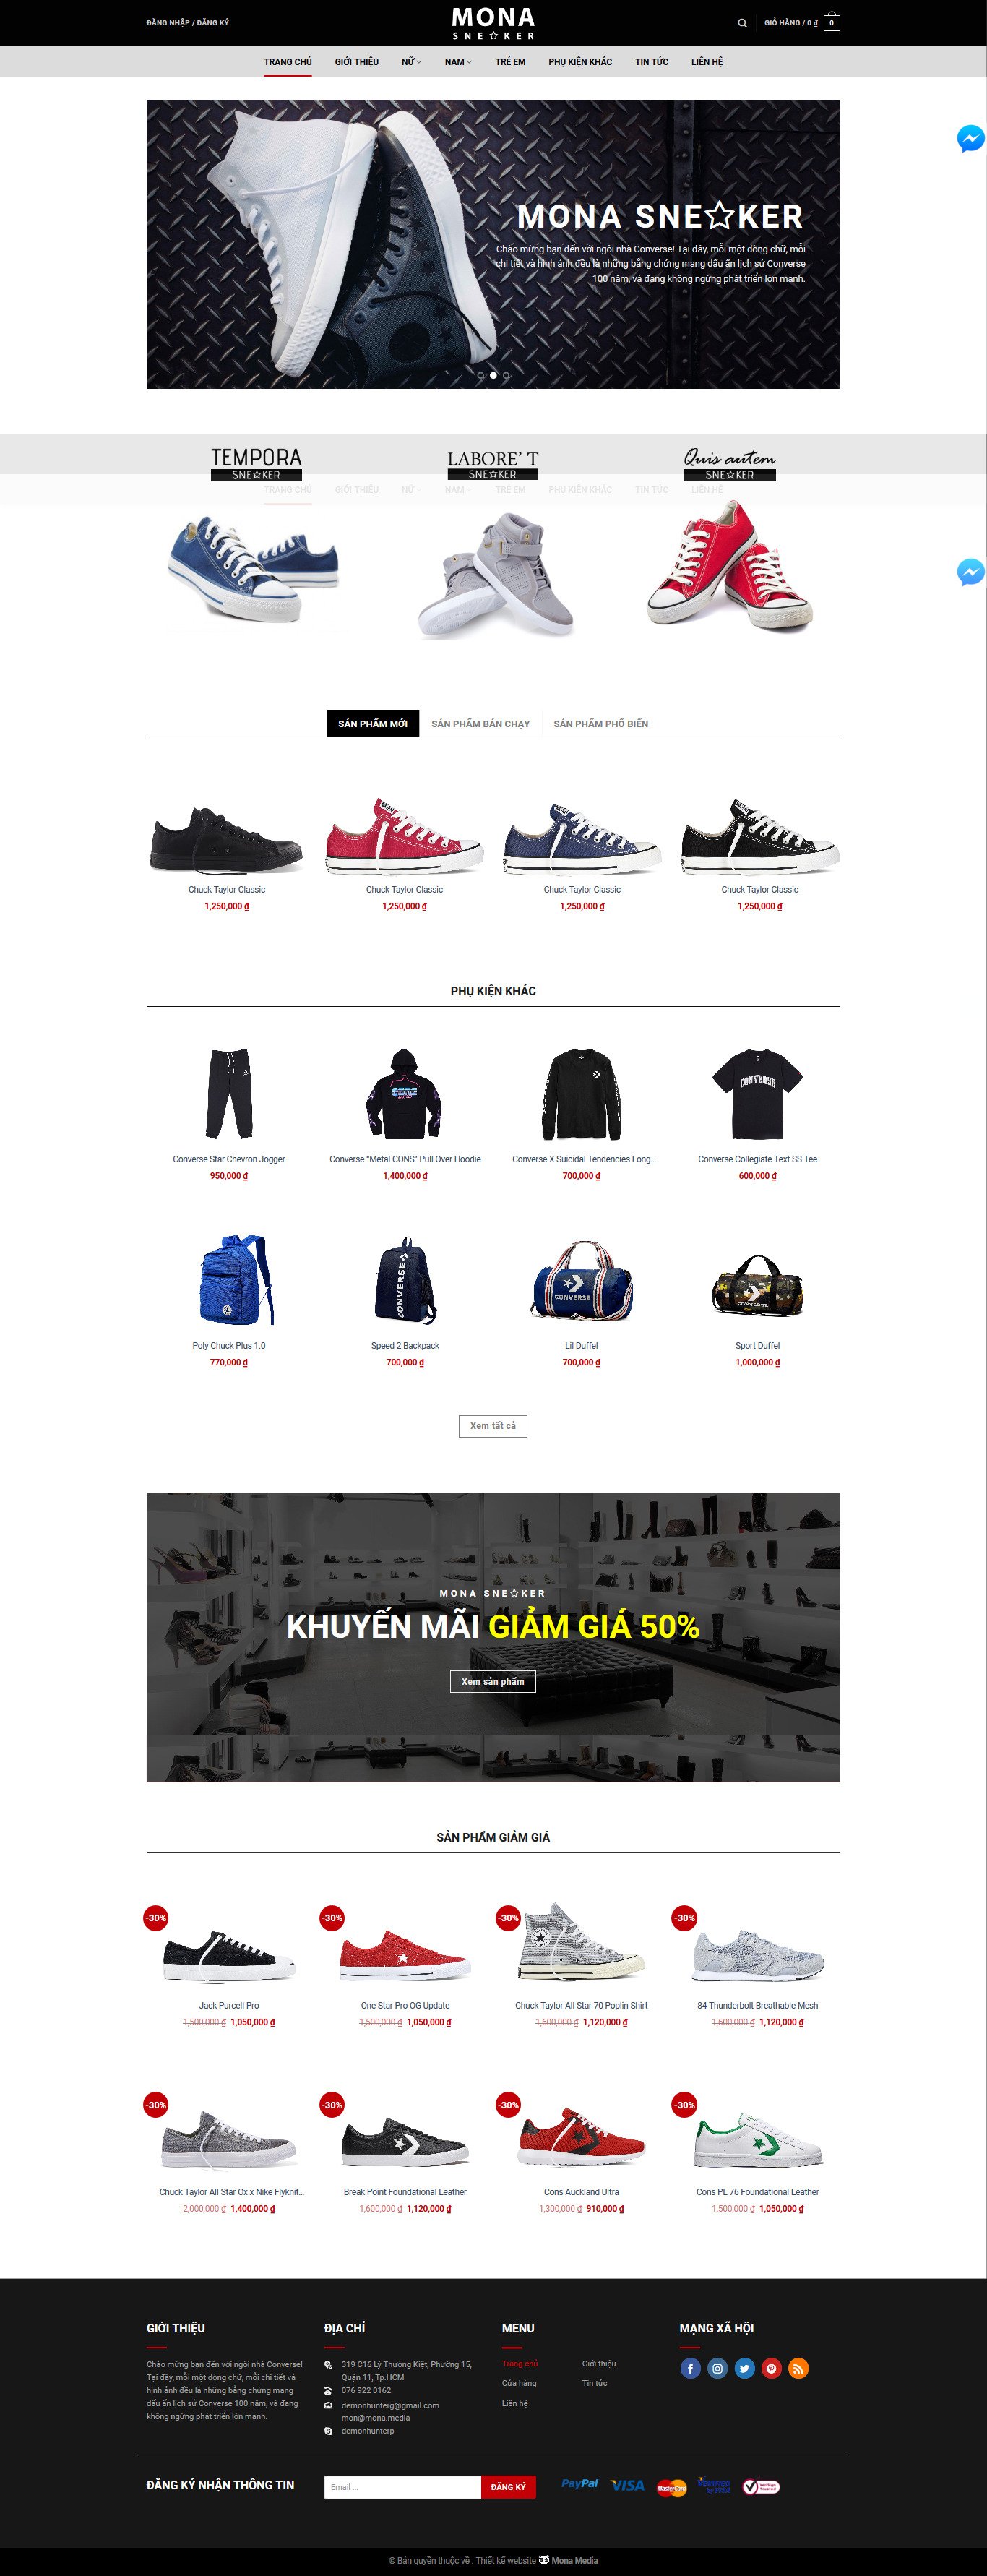 Mẫu website bán giày theo phong cách thể thao